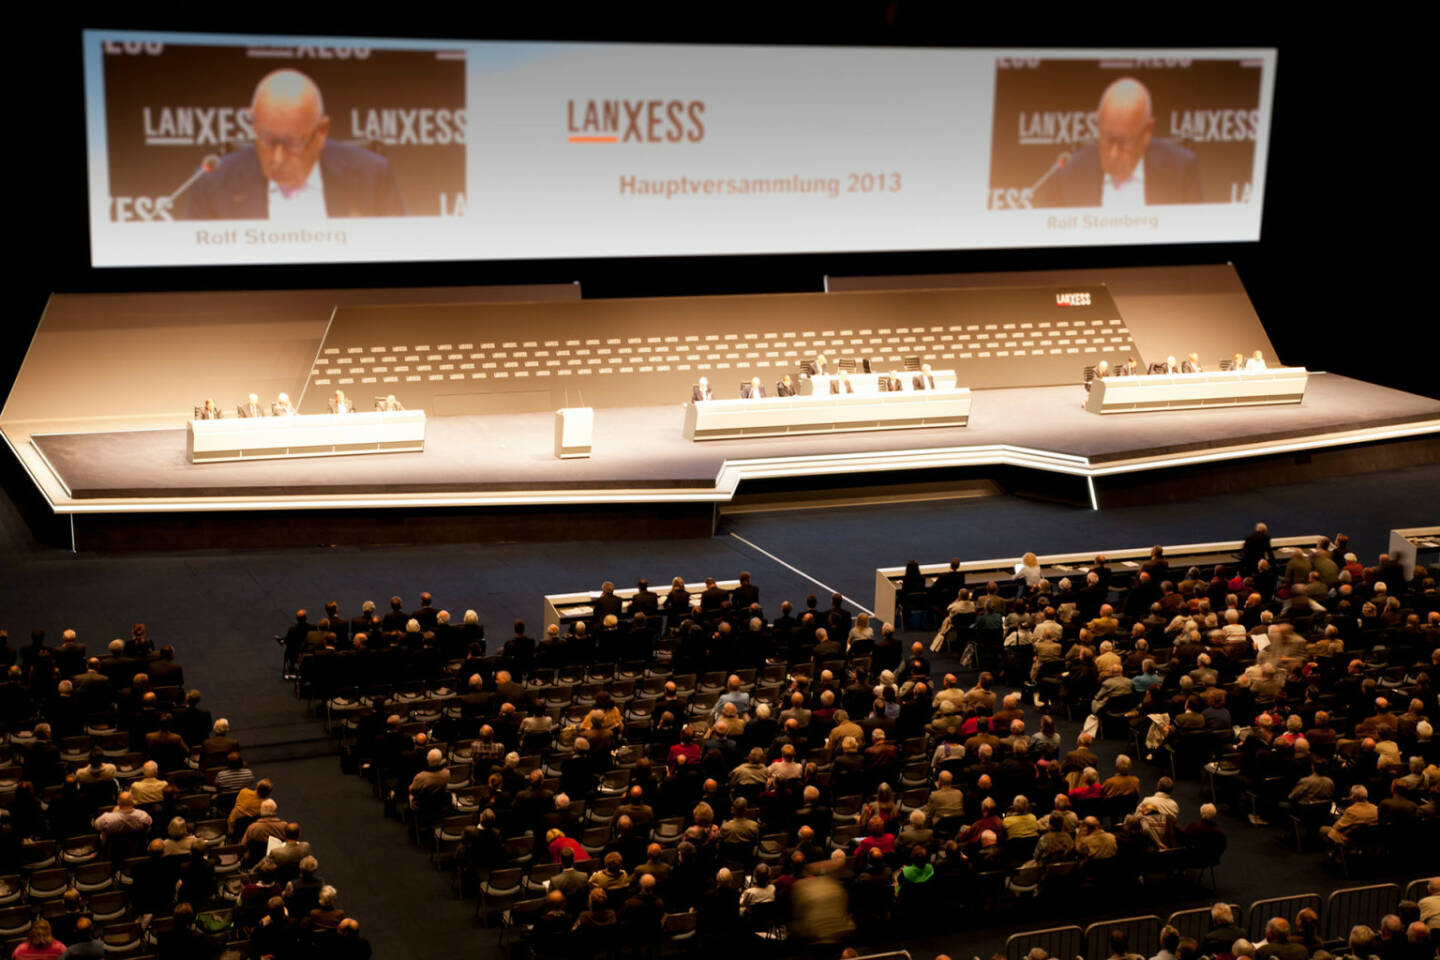 Lanxess Hauptversammlung 2013